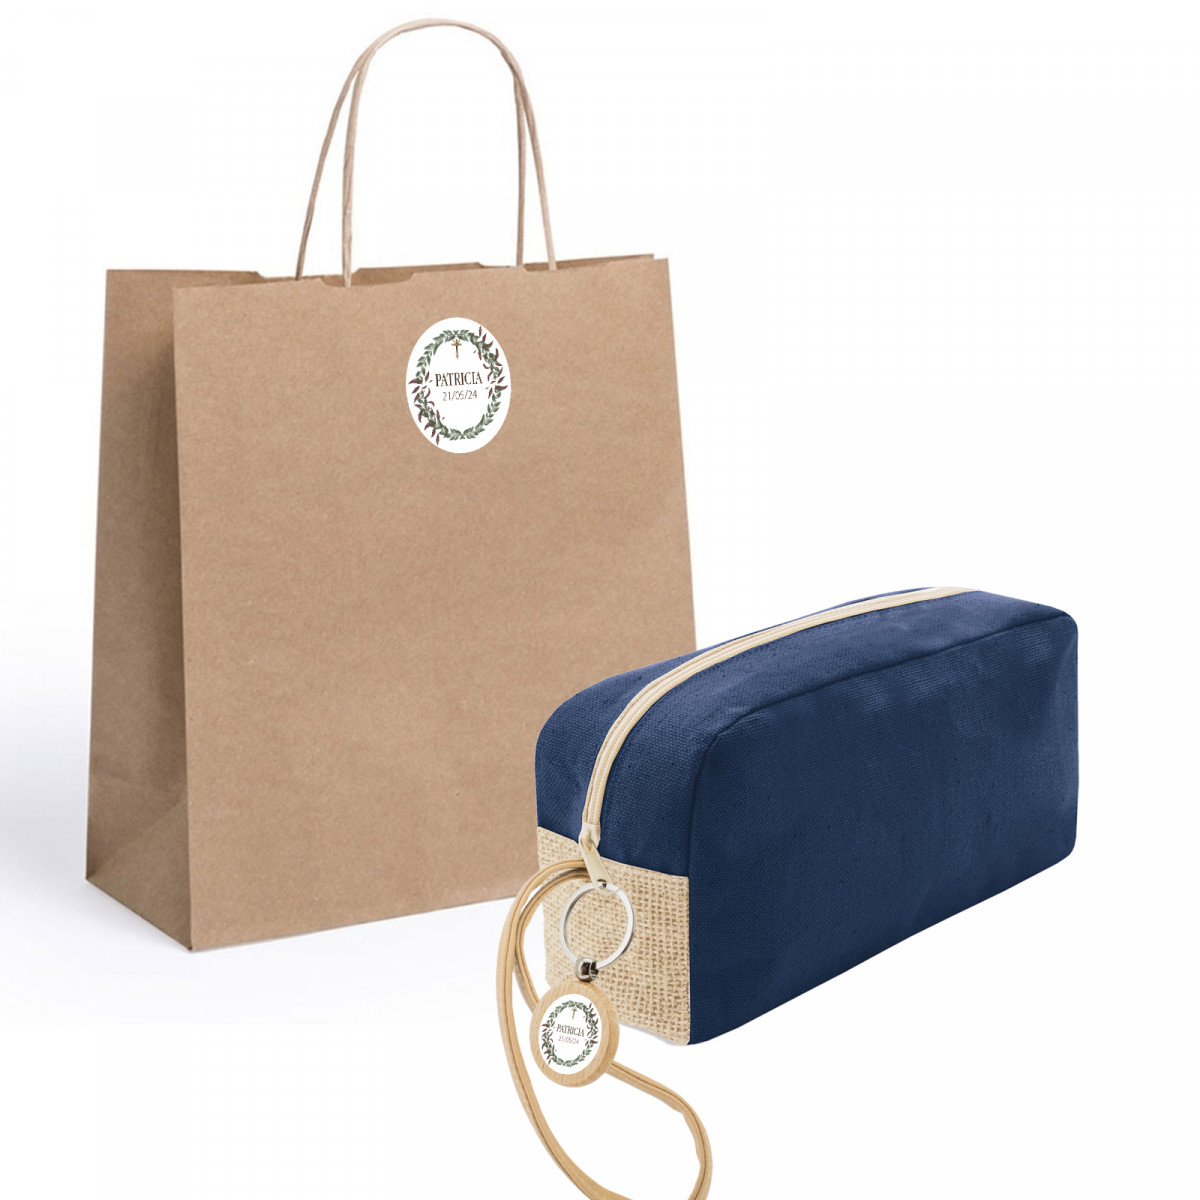 Beauty case con portachiavi personalizzato in sacchetto con adesivo